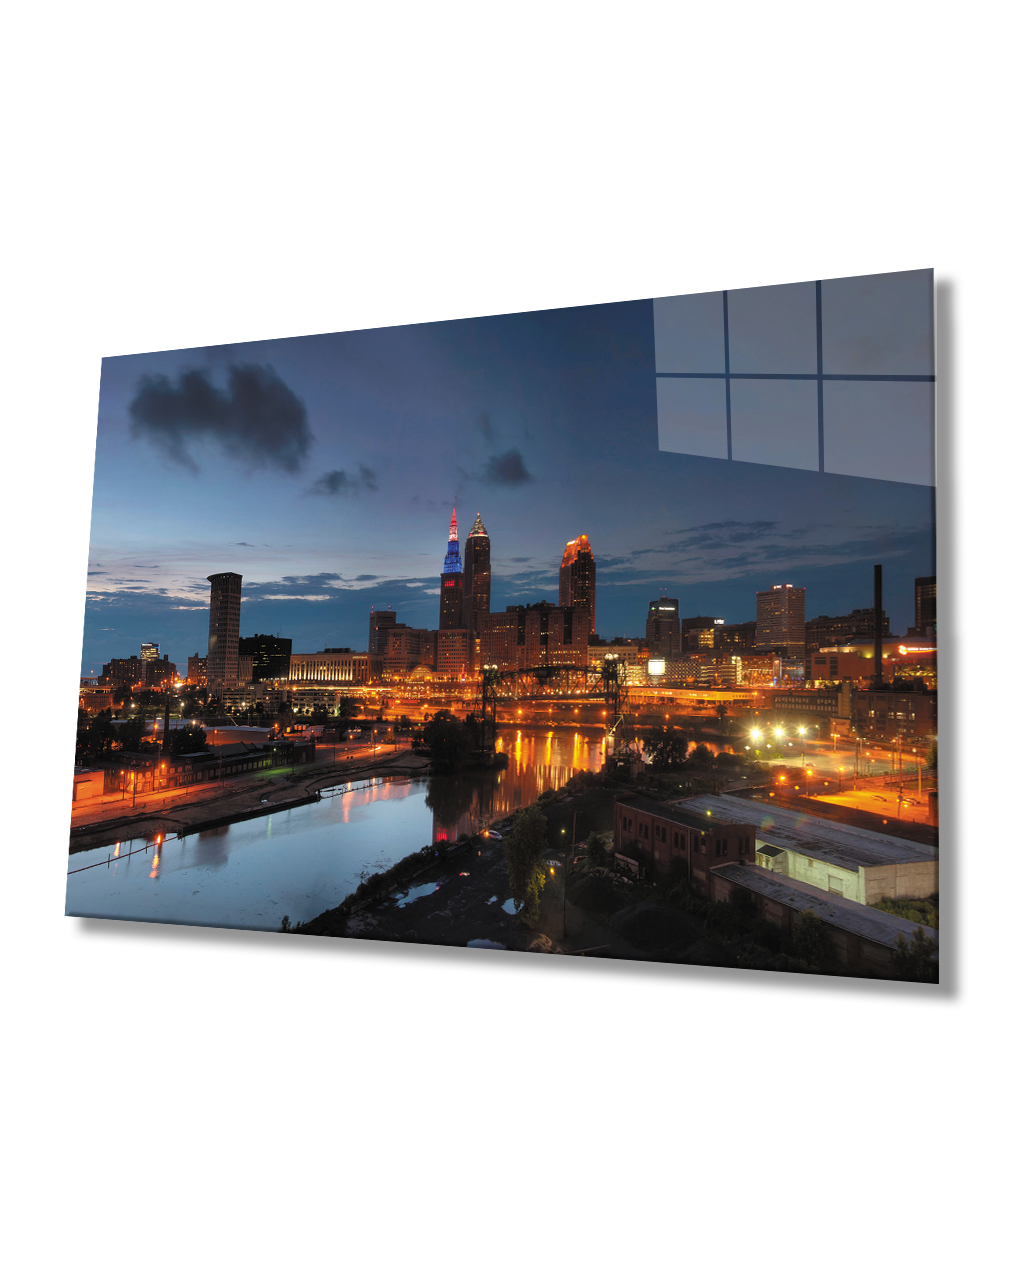 Gün Batımı Şehir Cam Tablo  4mm Dayanıklı Temperli Cam Sunset City Glass Table 4mm Durable Tempered Glass